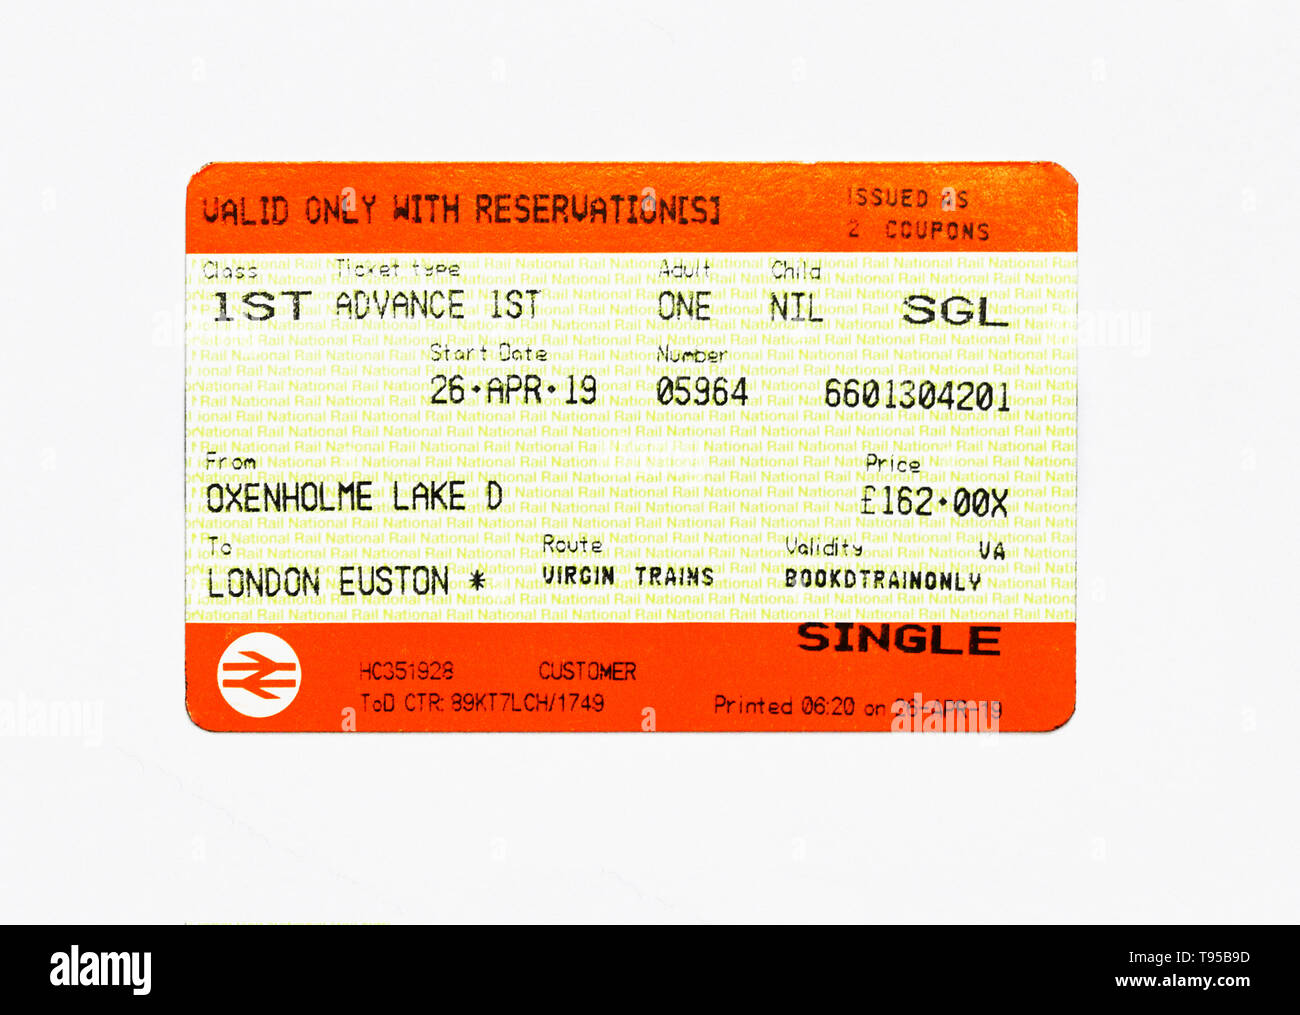 Regno Unito Biglietto del treno. Oxenholme Lake District a London Euston. 1st. Classe. Adulto. Anticipo 1st. Singola. Virgin Trains. Prezzo £162.00. Foto Stock